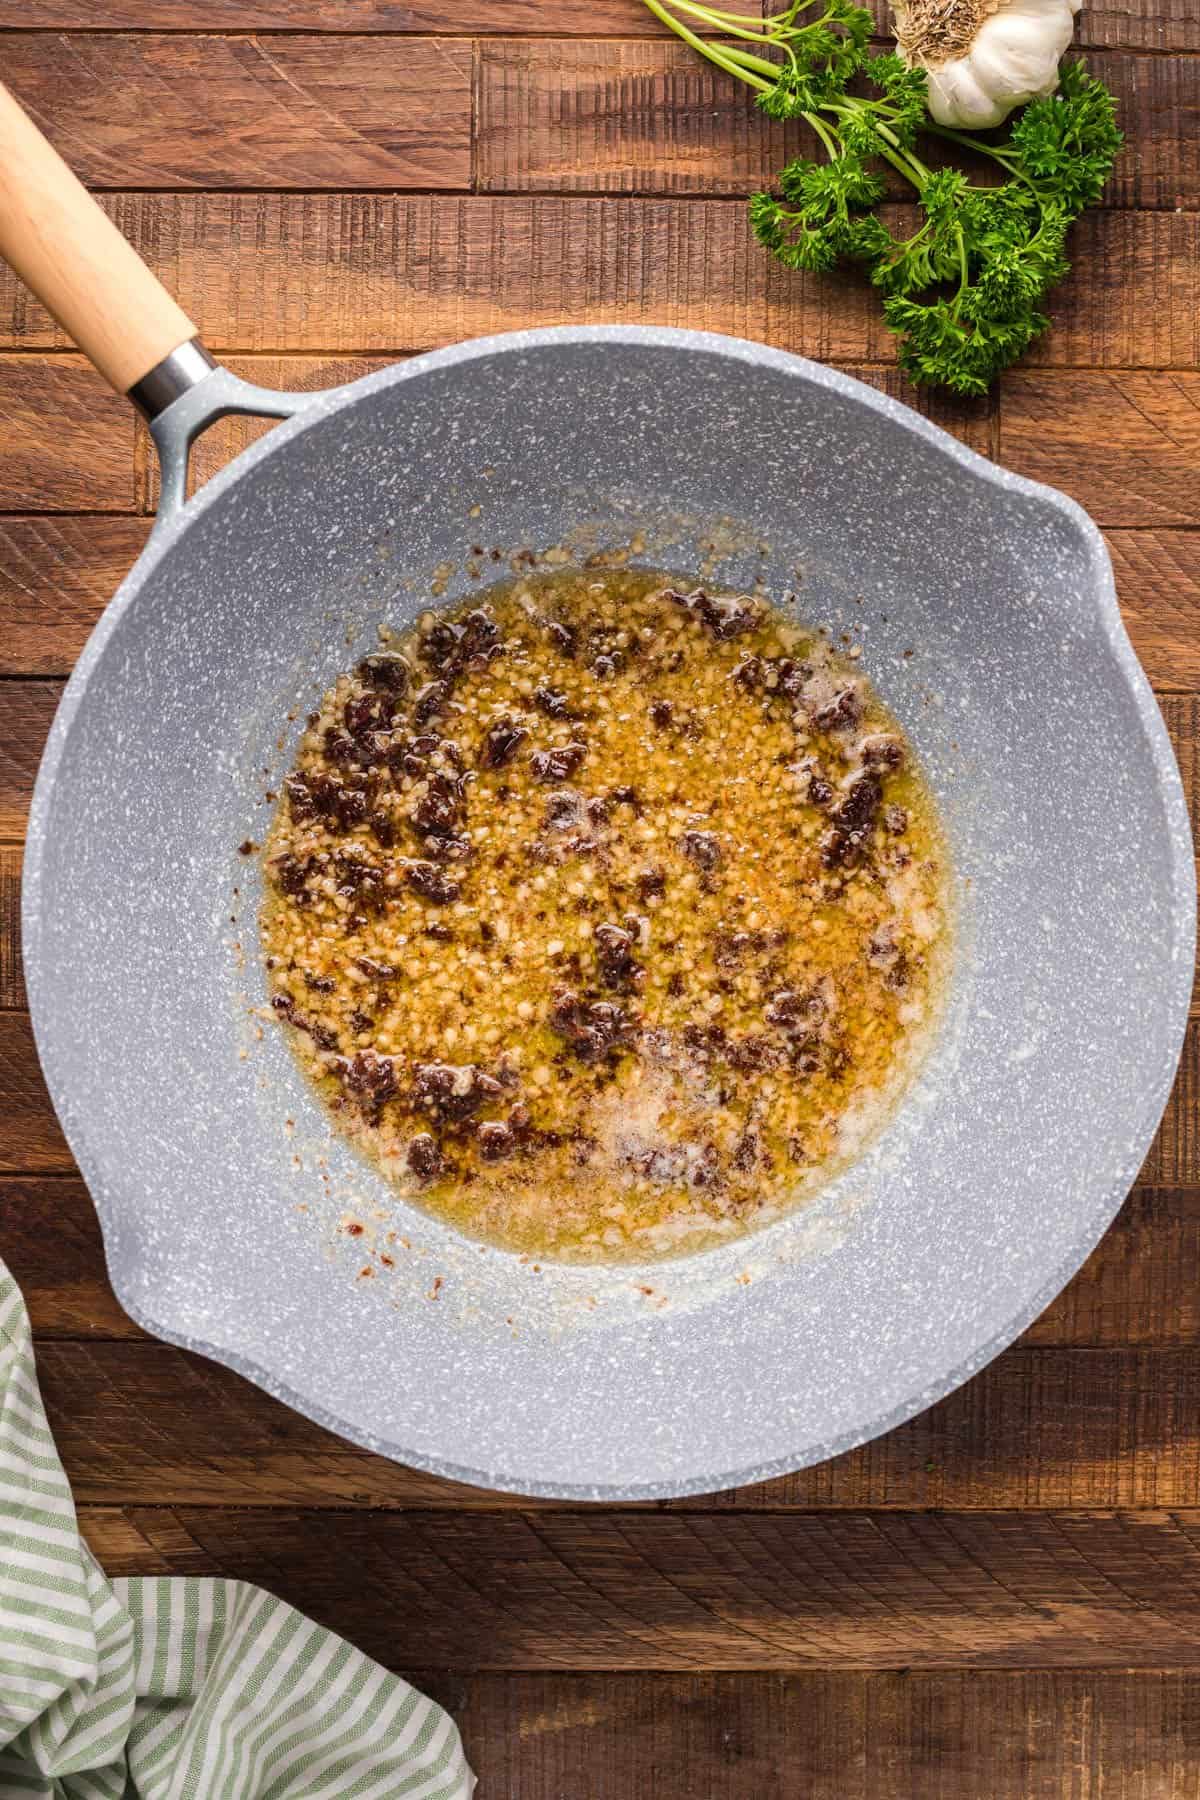 Sauteed garlic in a pan.